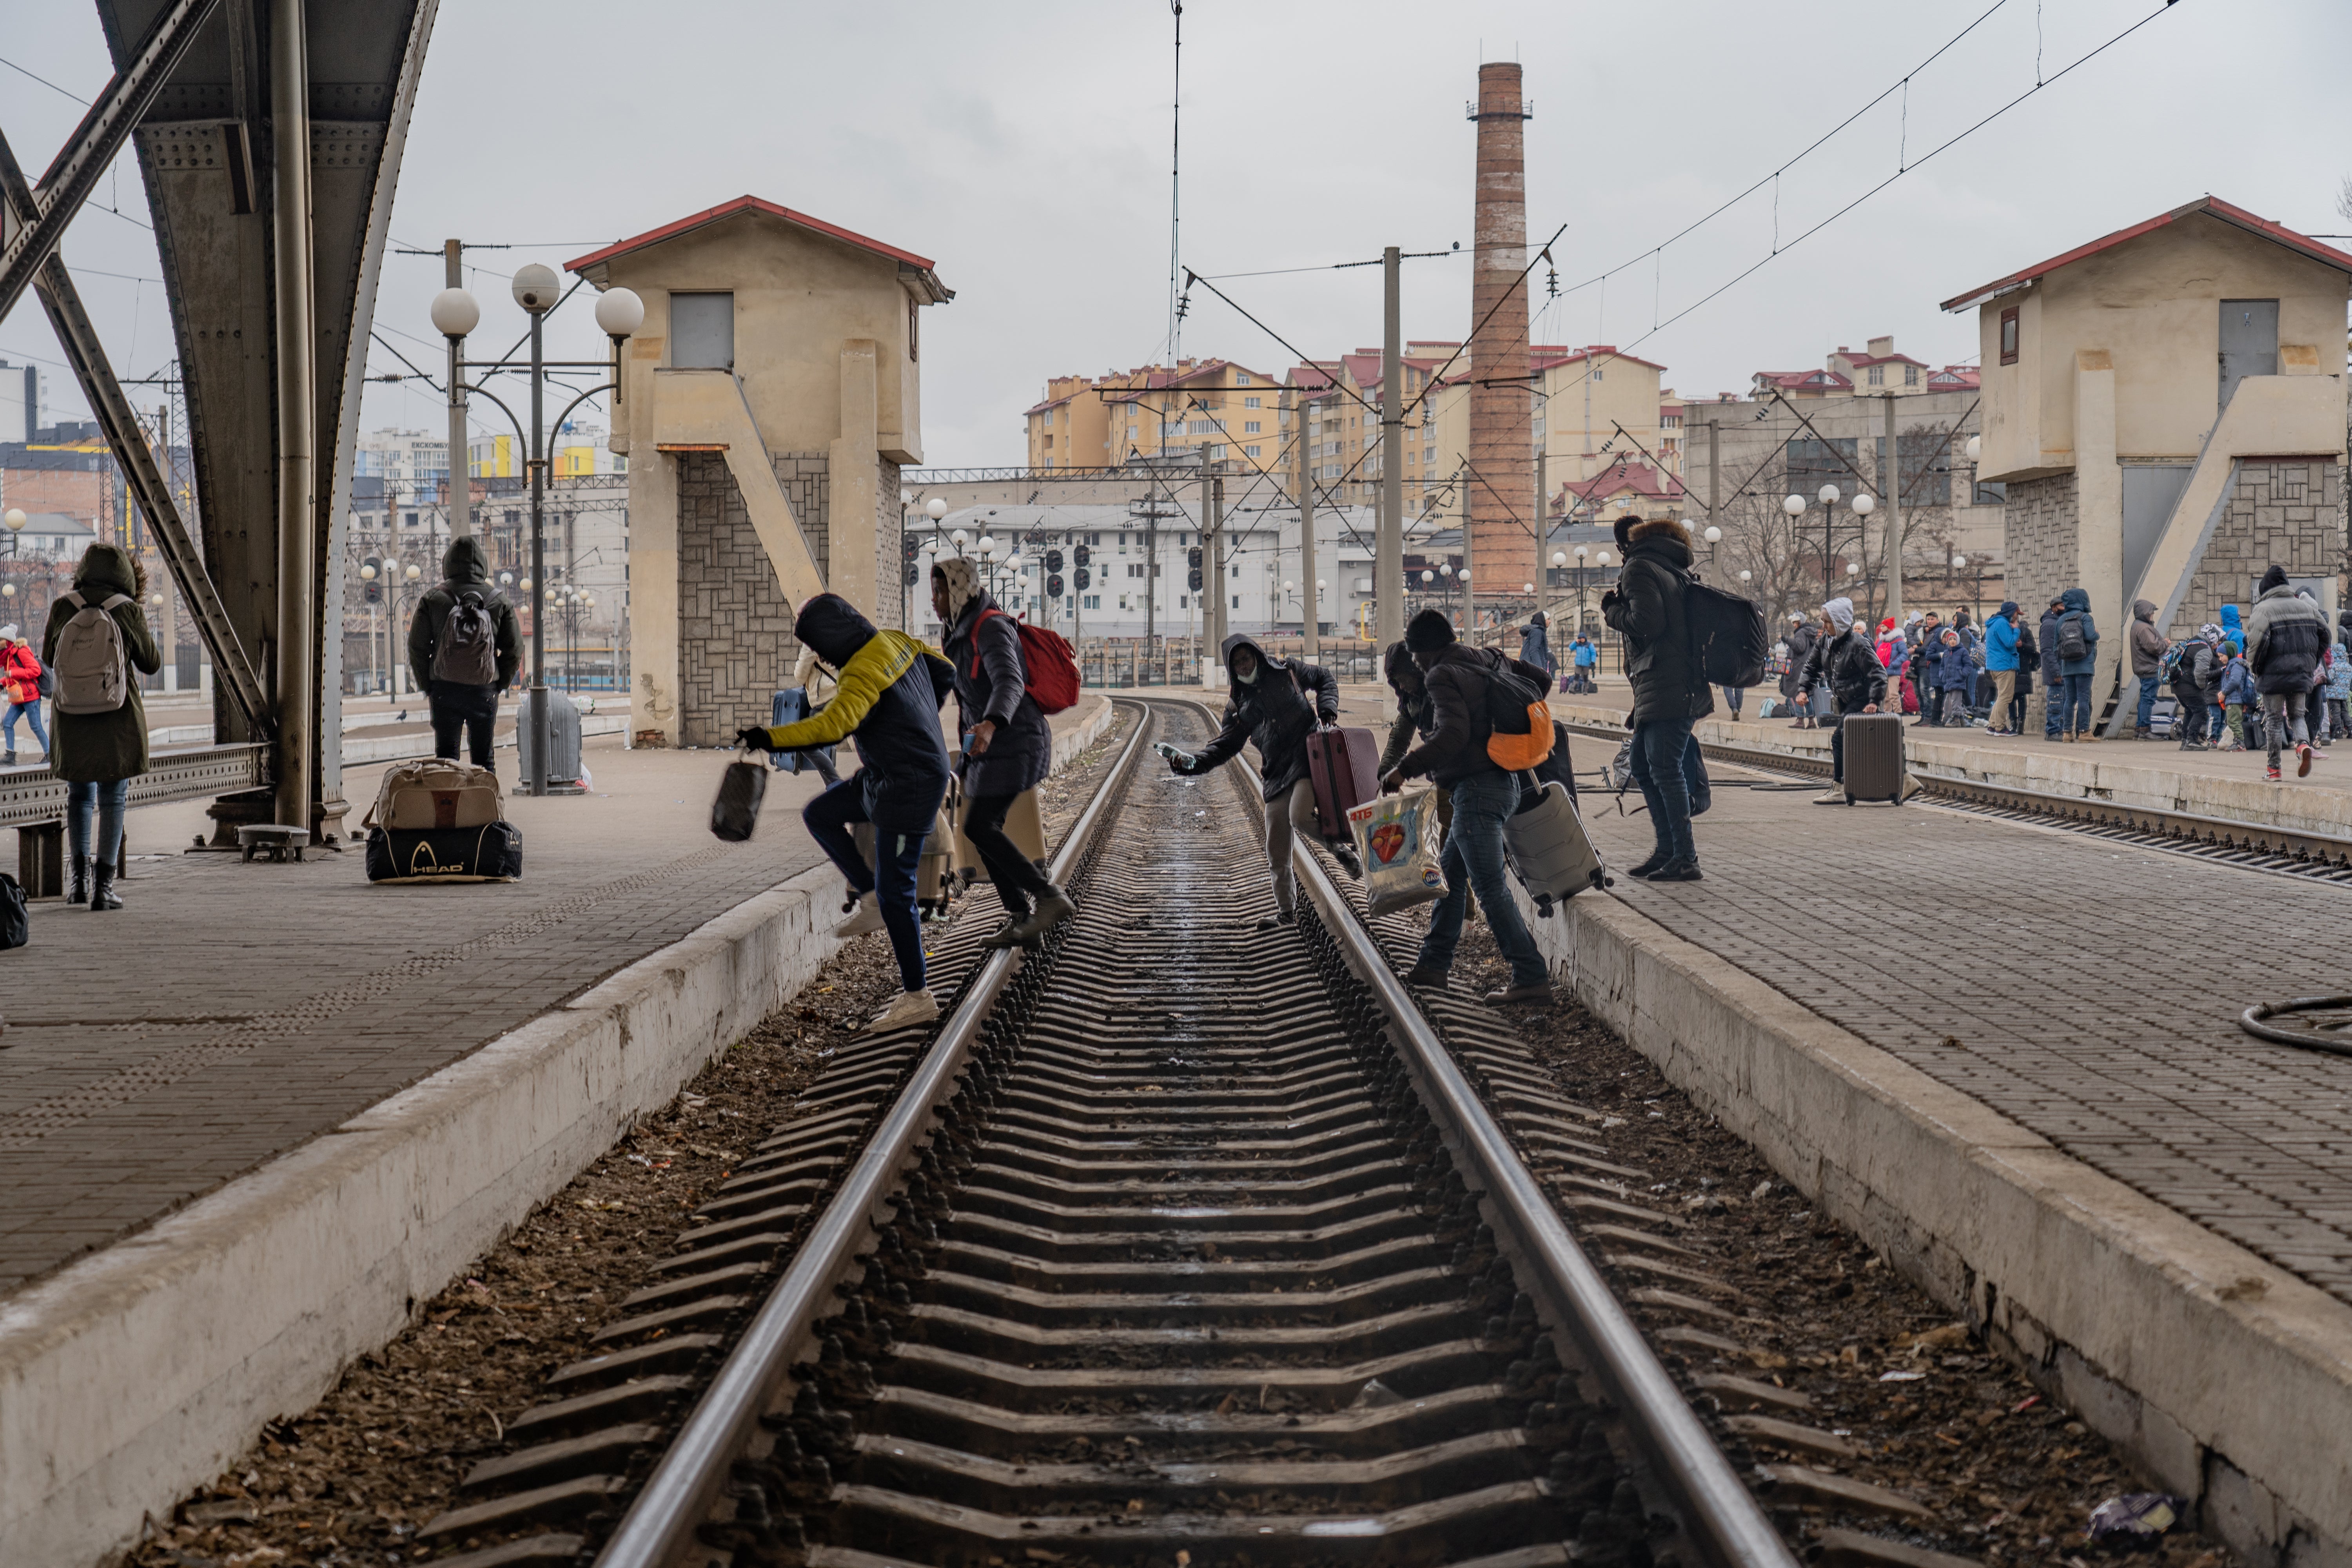 Un grupo de refugiados nigerianos atraviesan las plataformas en una estación, esperando poder abordar un tren